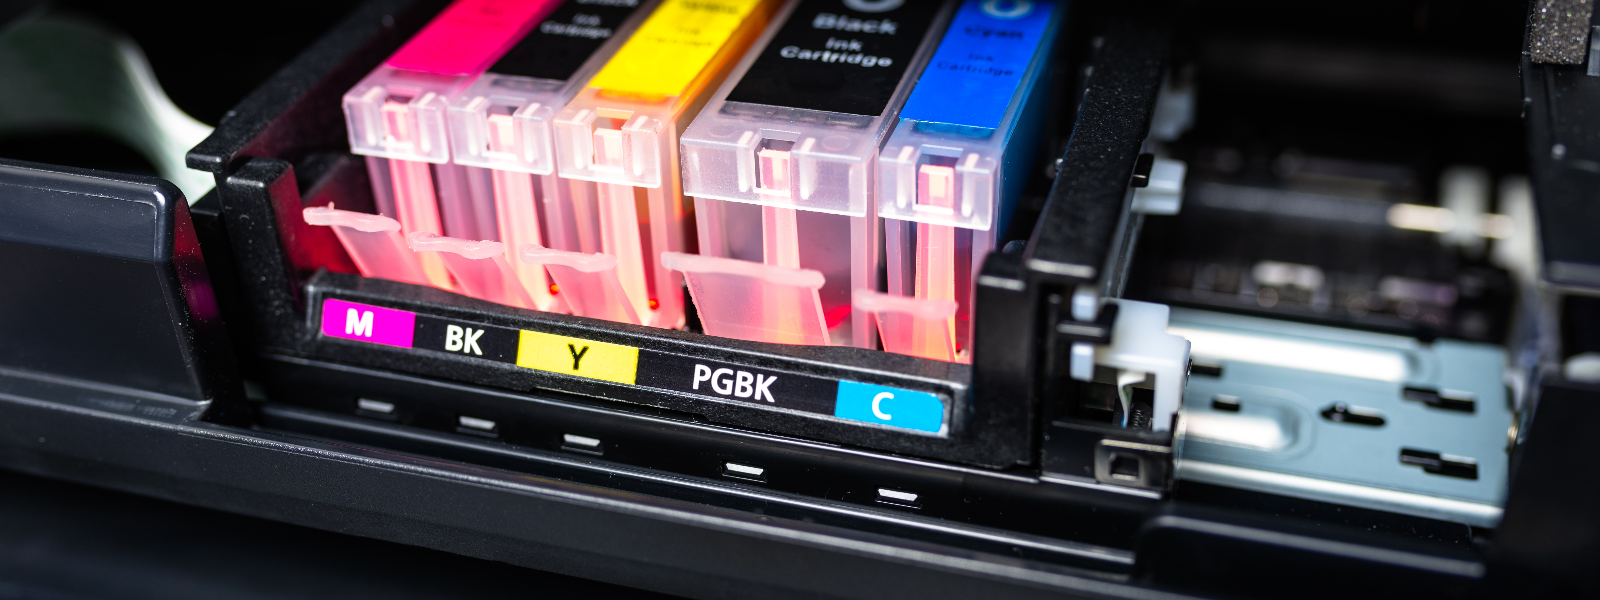 ÖKOPRINT OÜ - Printerikassettide täitmine ja renoveerimine, tagades kõrgekvaliteedilised täidetud tindi- ja laserkass...